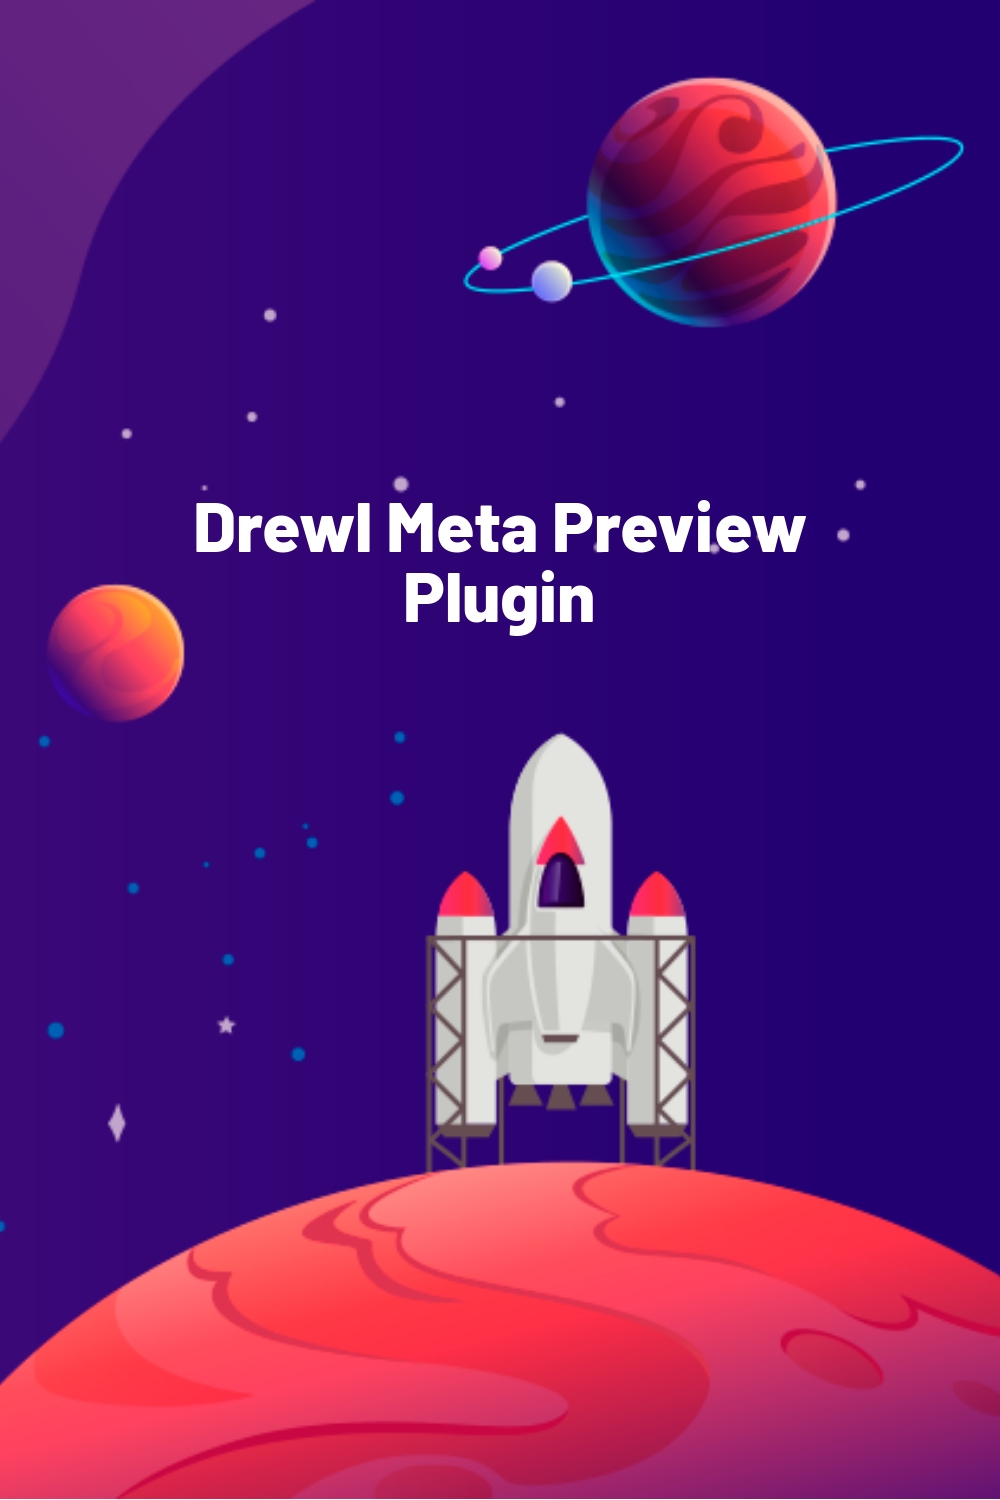 Drewl Meta Preview Plugin